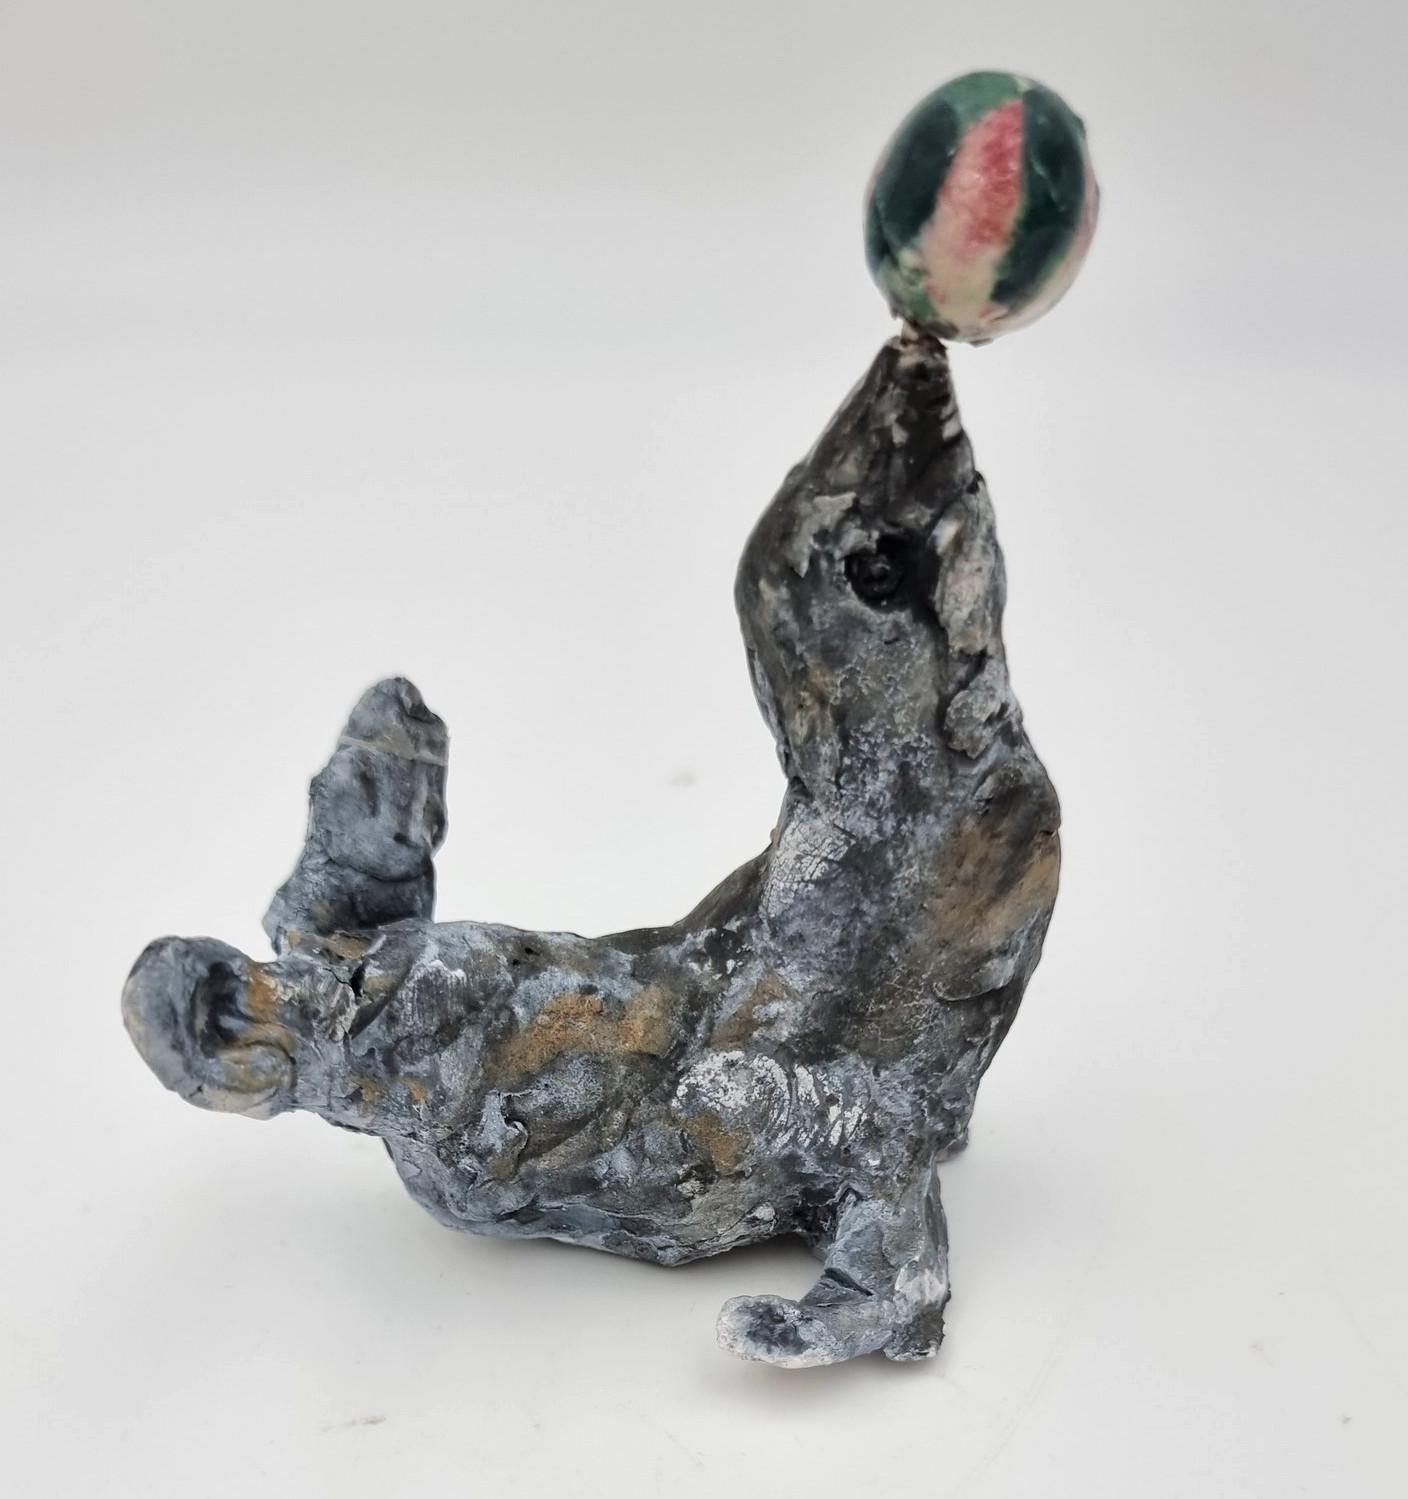 Ann Rothman Figurative Sculpture - Seal (Circus, Viola Frey, Cirque du Soleil, The Ringling Bros, Barnum & Bailey)